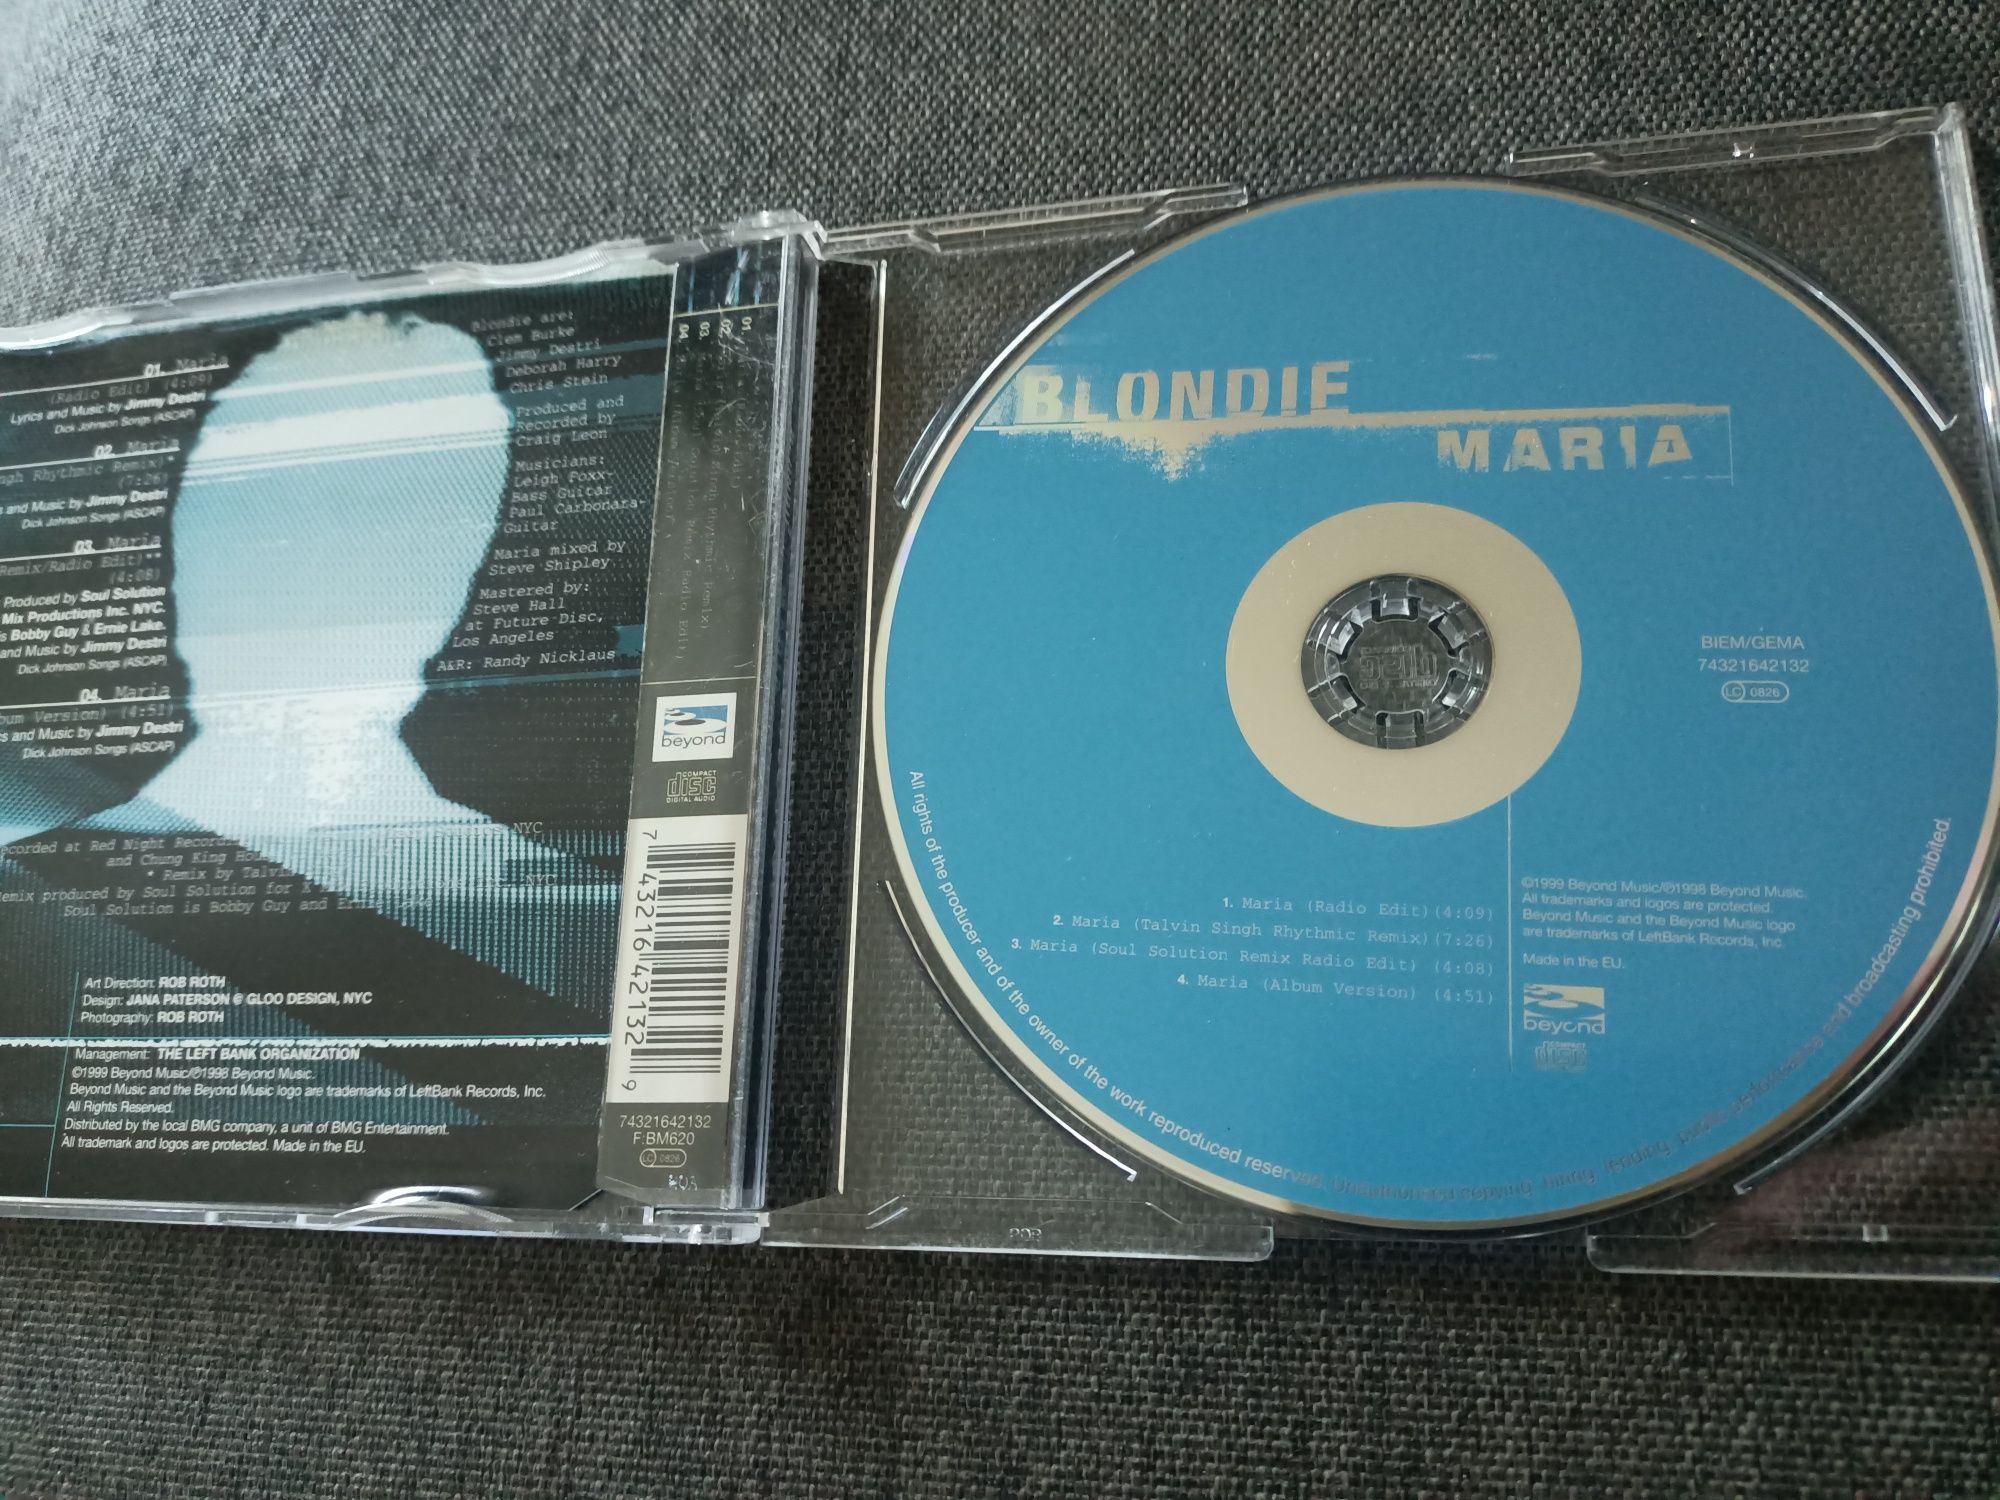 Blondie - Maria (CD, Maxi)(vg+)